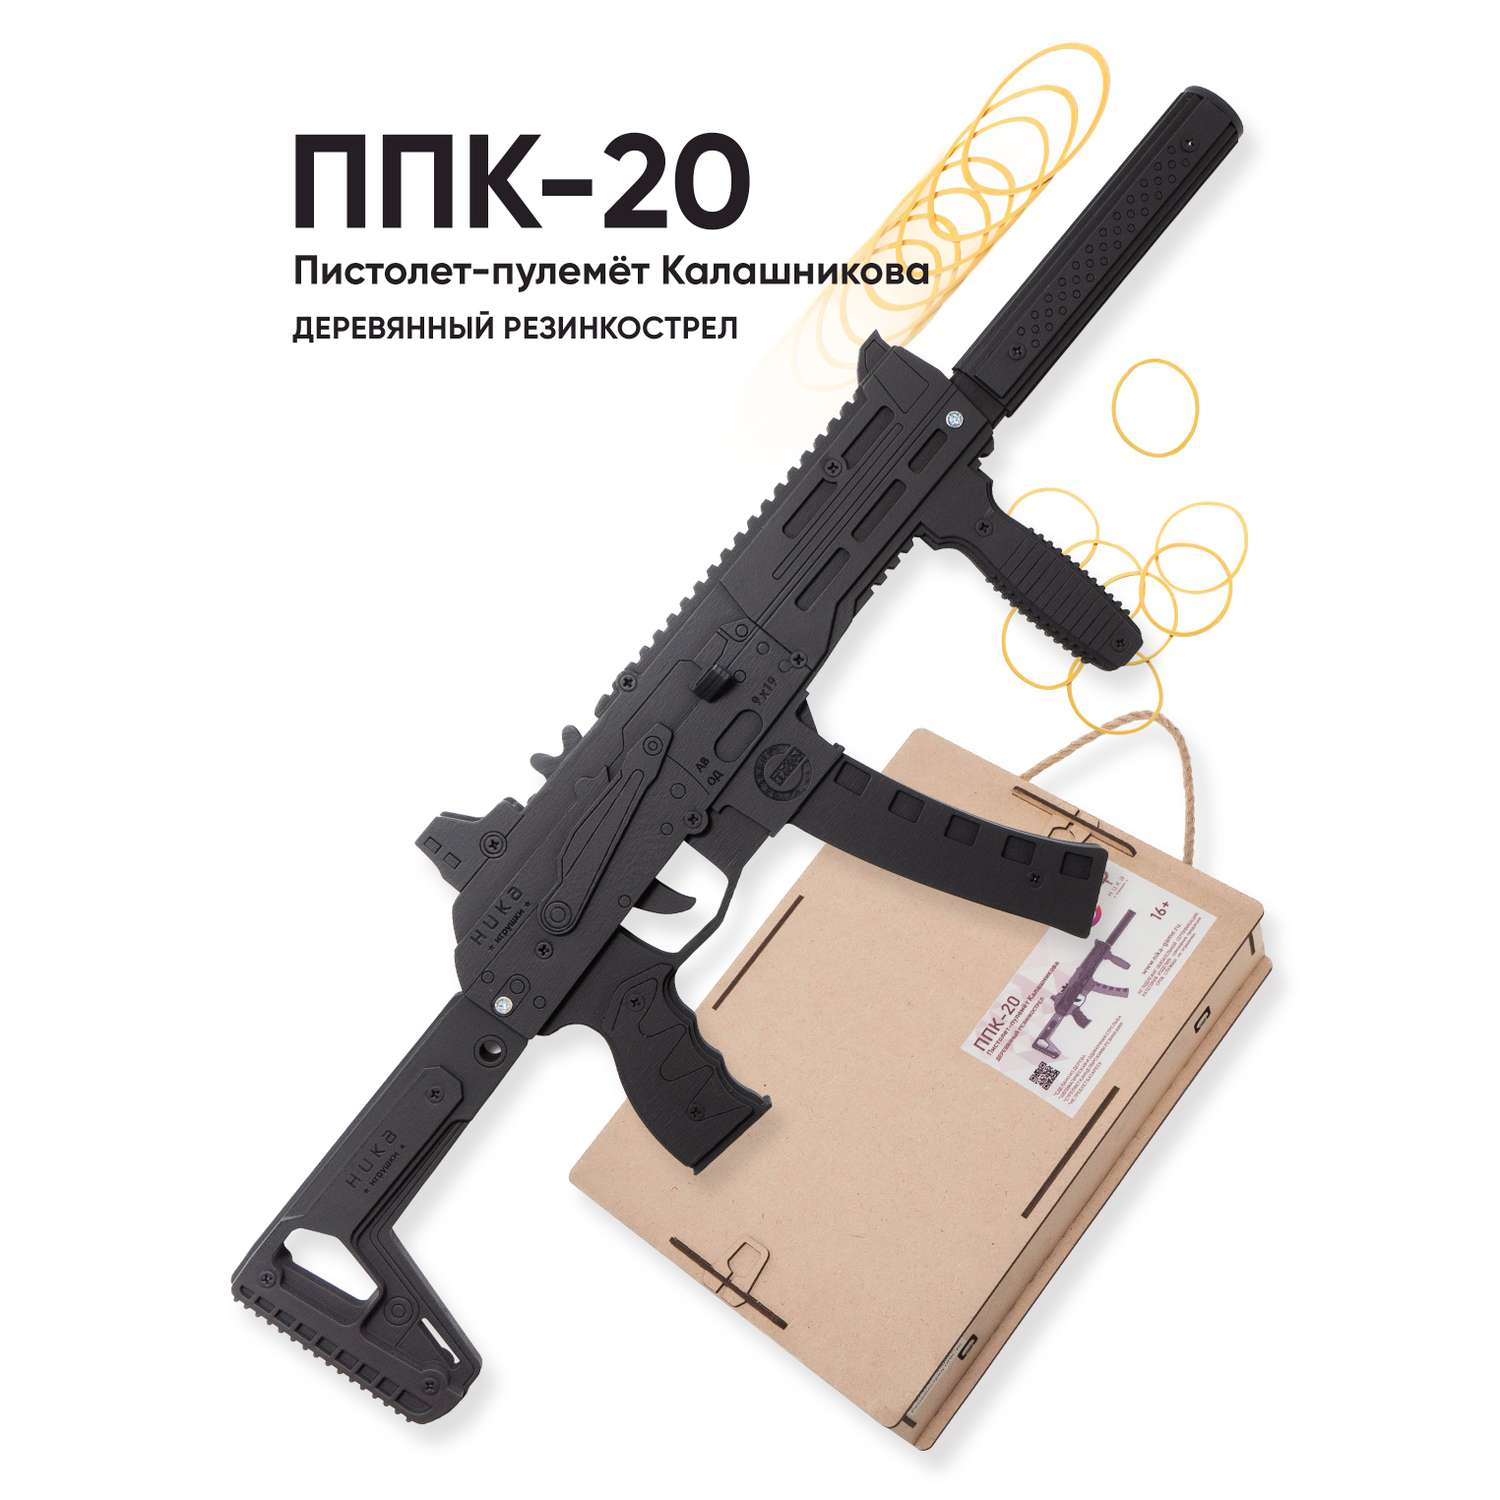 Резинкострел НИКА игрушки Автомат ППК-20 в подарочной упаковке - фото 1